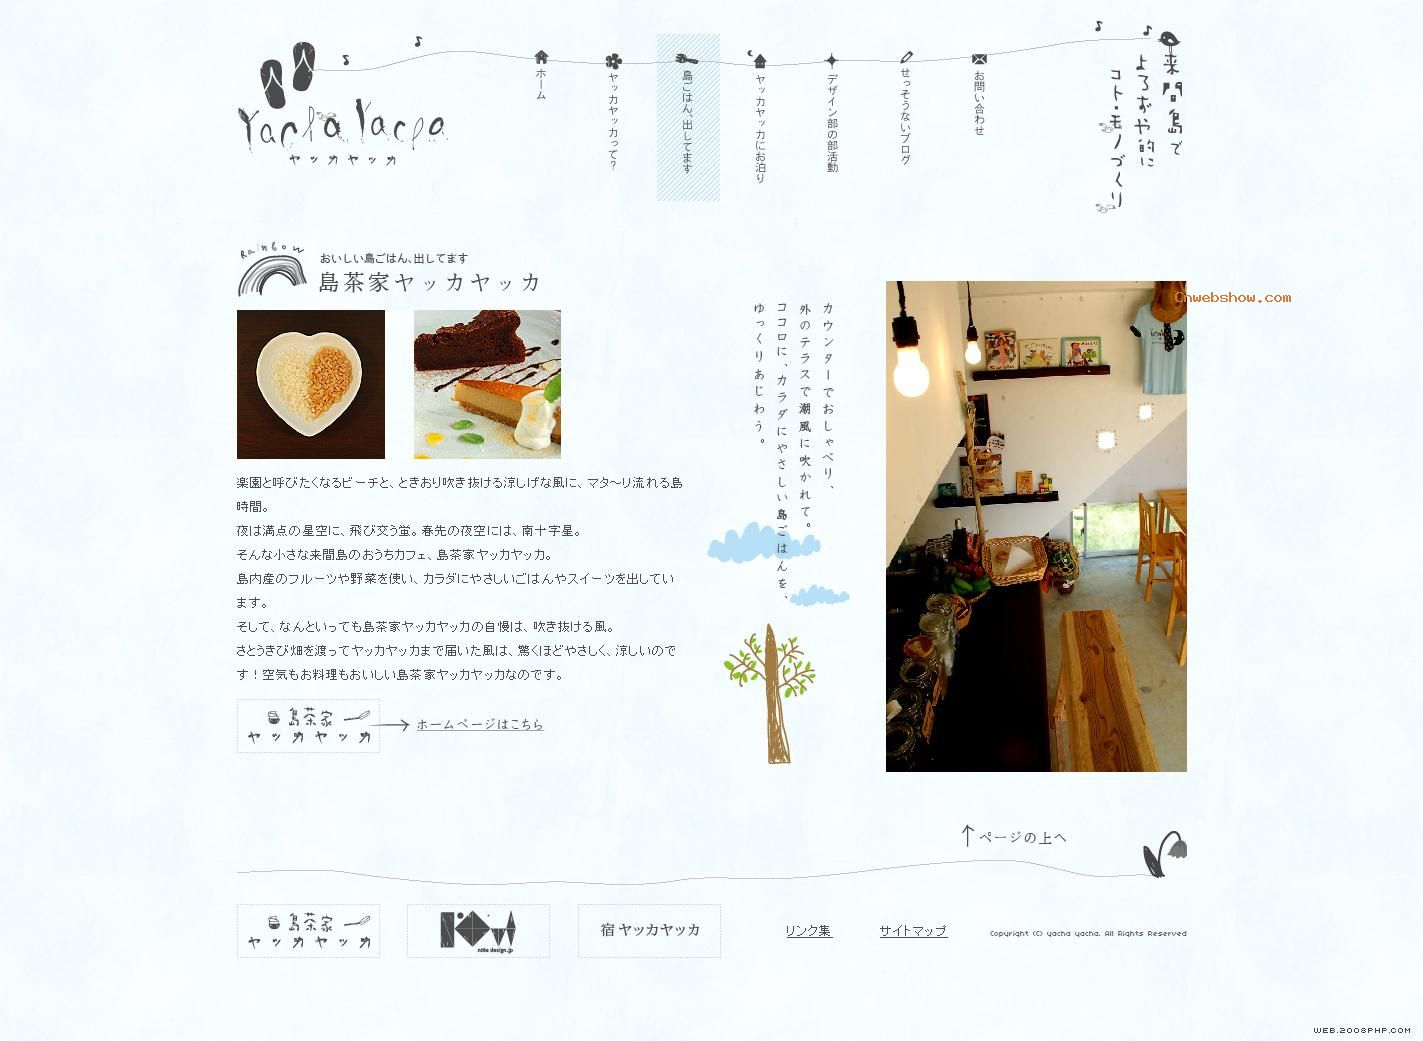 日本咖啡厅餐饮美食旅游网站设计欣赏,日韩网